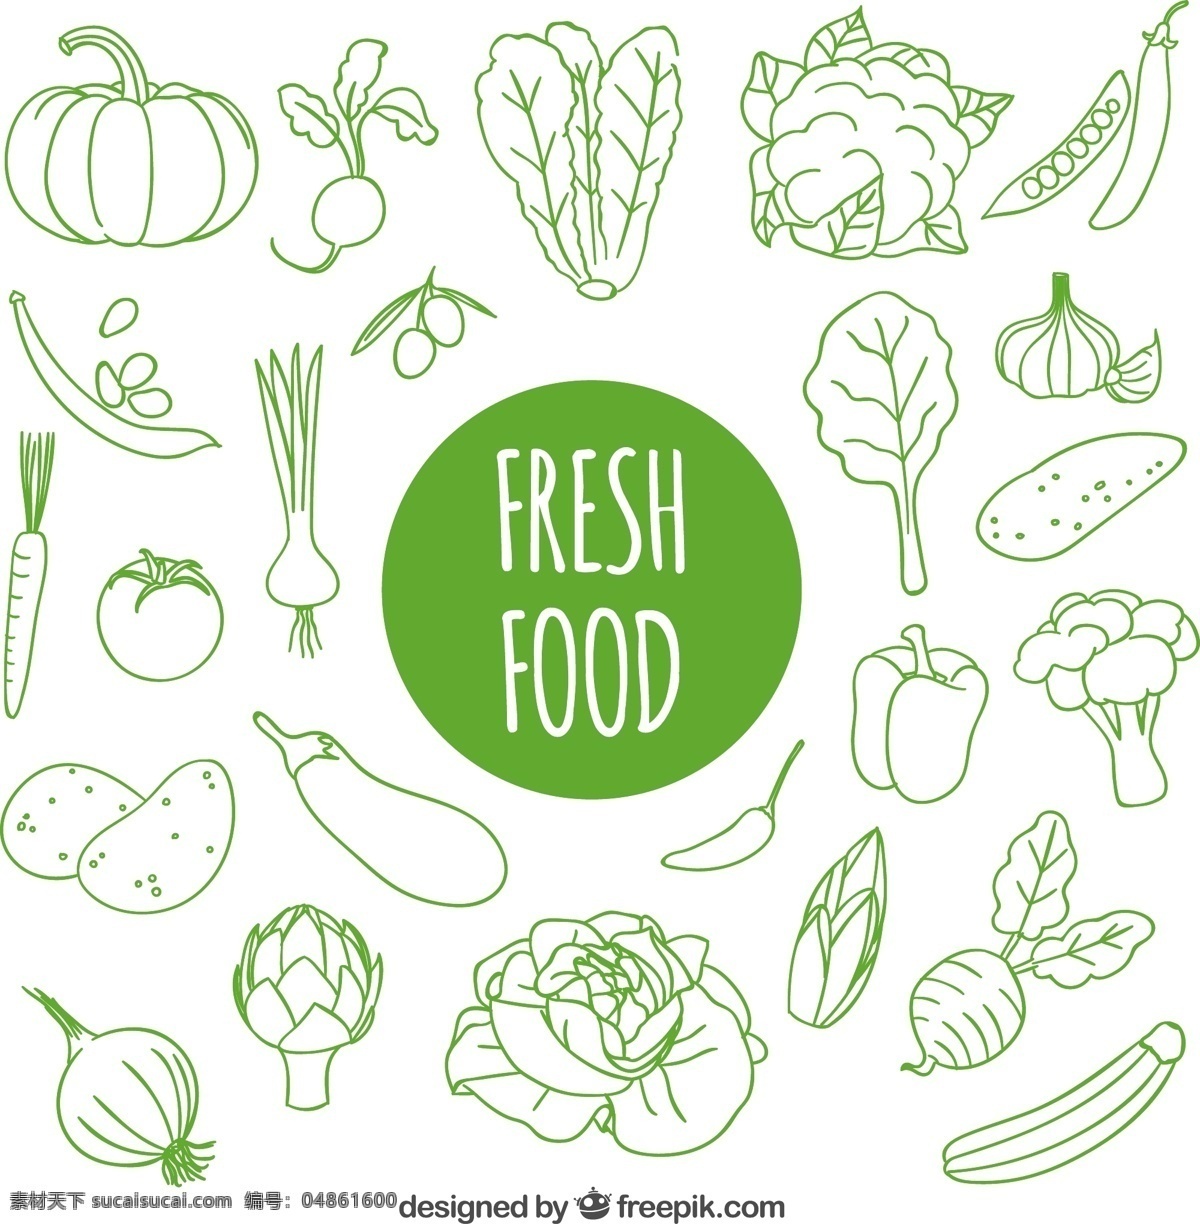 手拉新鲜食物 食物方面 绿色 健康 水果 蔬菜 手工绘制的 有机的 绘画 健康食品 新鲜 手工绘图 绘制 有机食品 粗略 白色